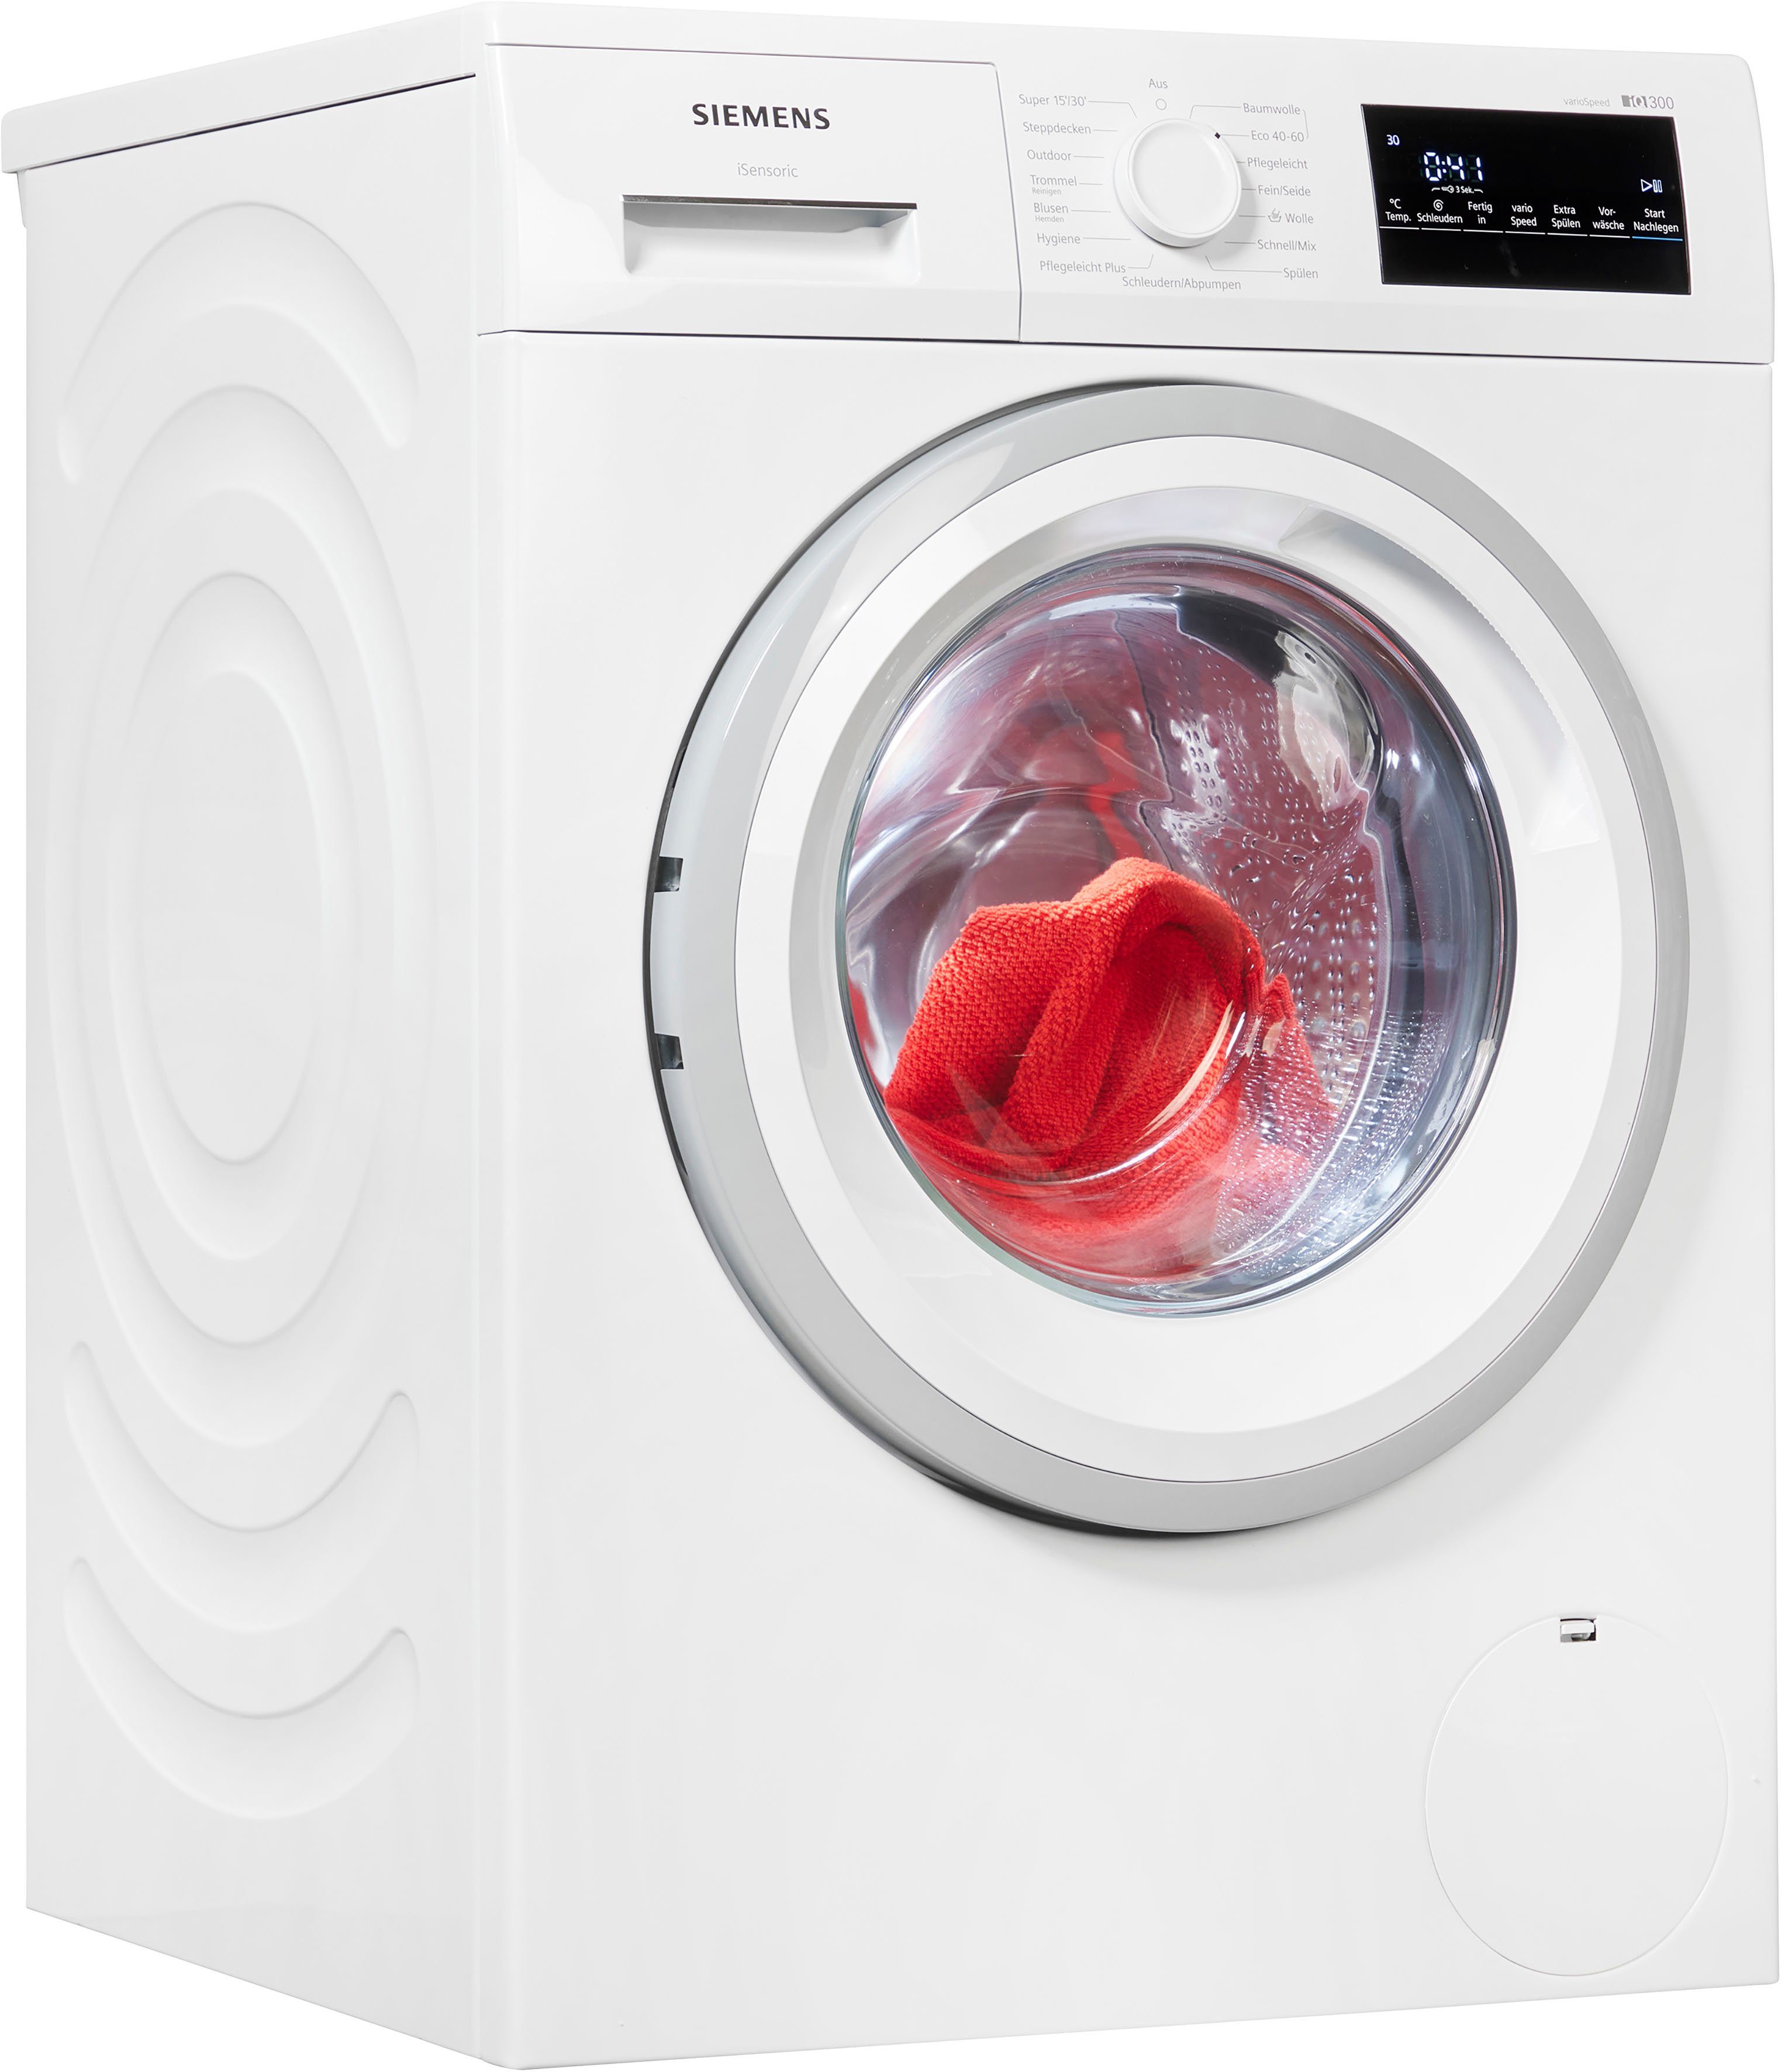 SIEMENS Waschmaschine Effizient, 1400 kg, - leise U/min, WM14NK23, langlebig und iQdrive 8